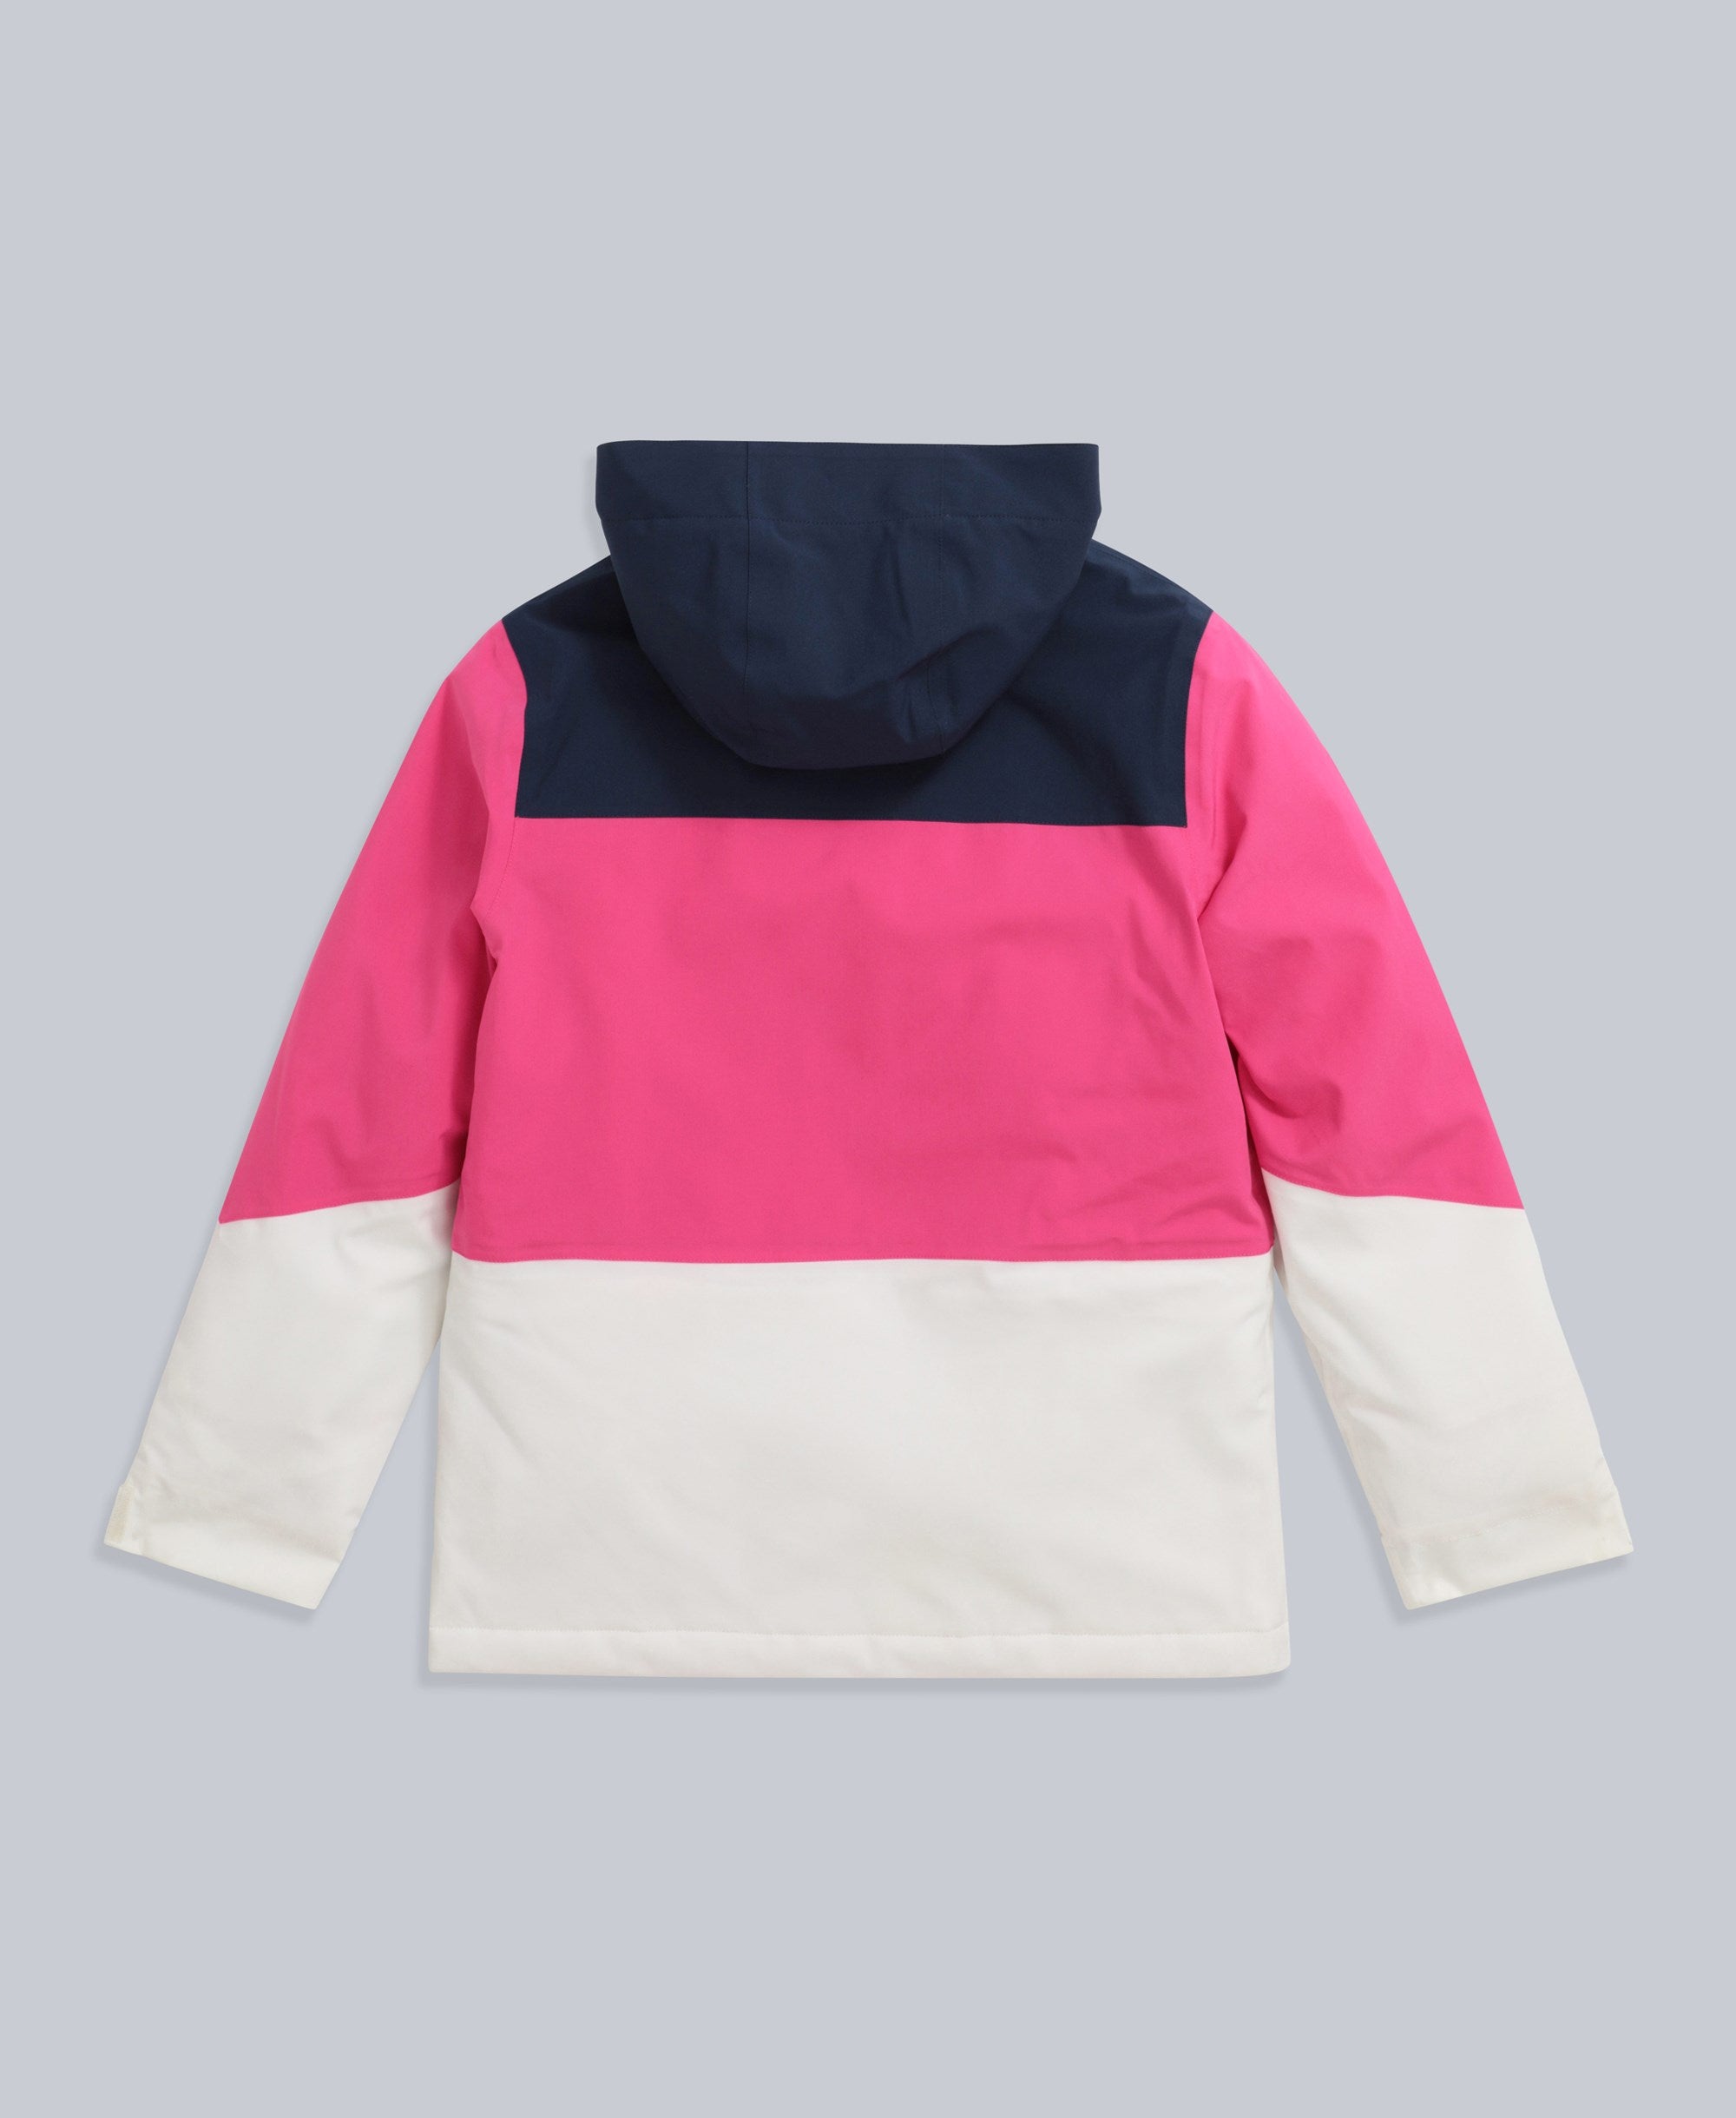 Roam Kids Snow Jacket - Pink